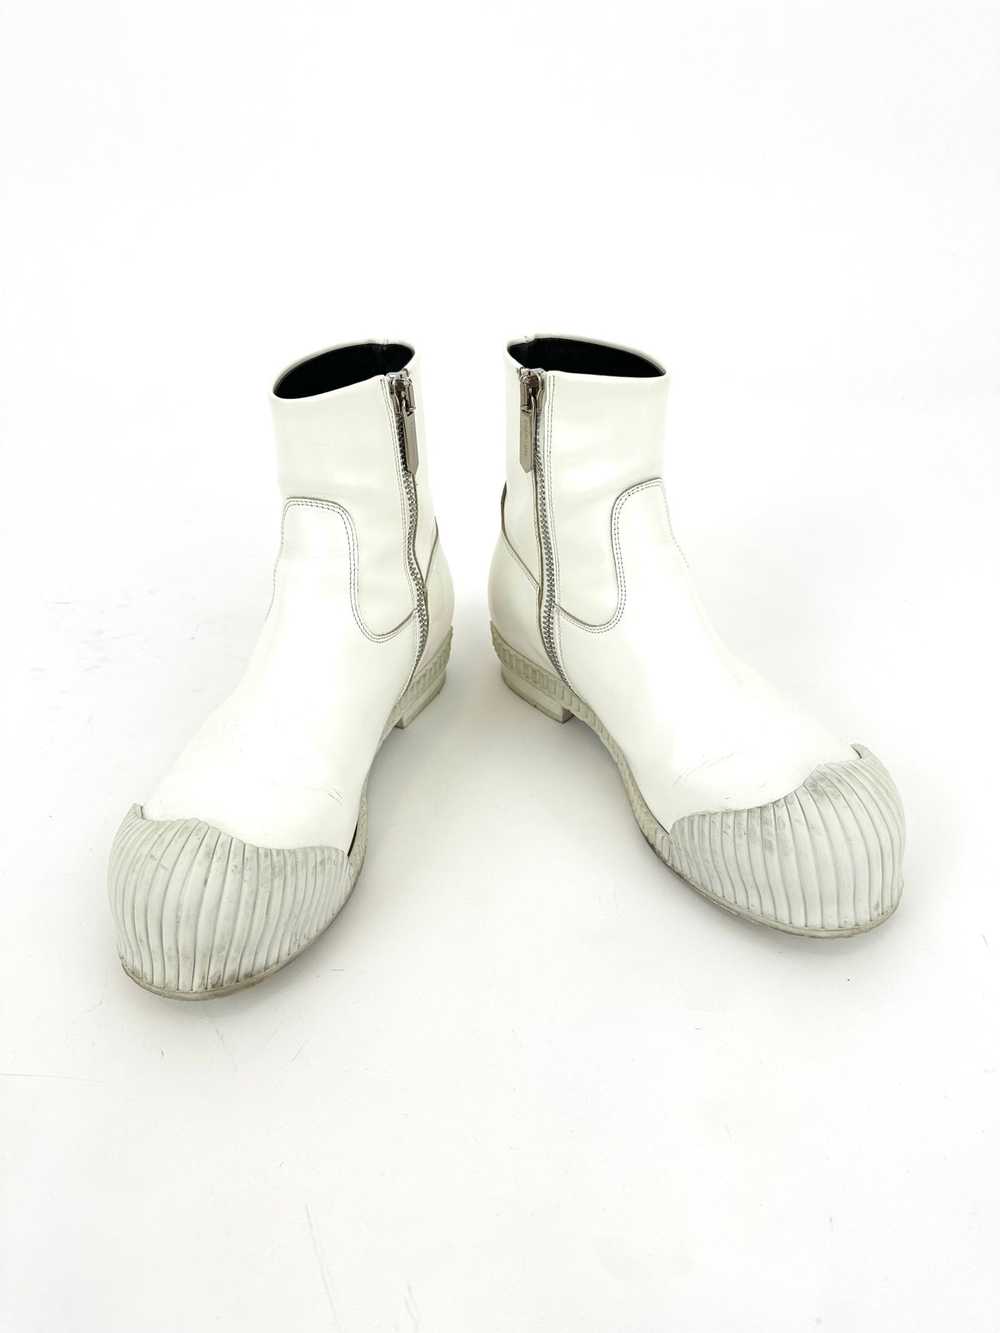 Calvin Klein 205W39NYC Deicine Spazzolato Boots* - image 2